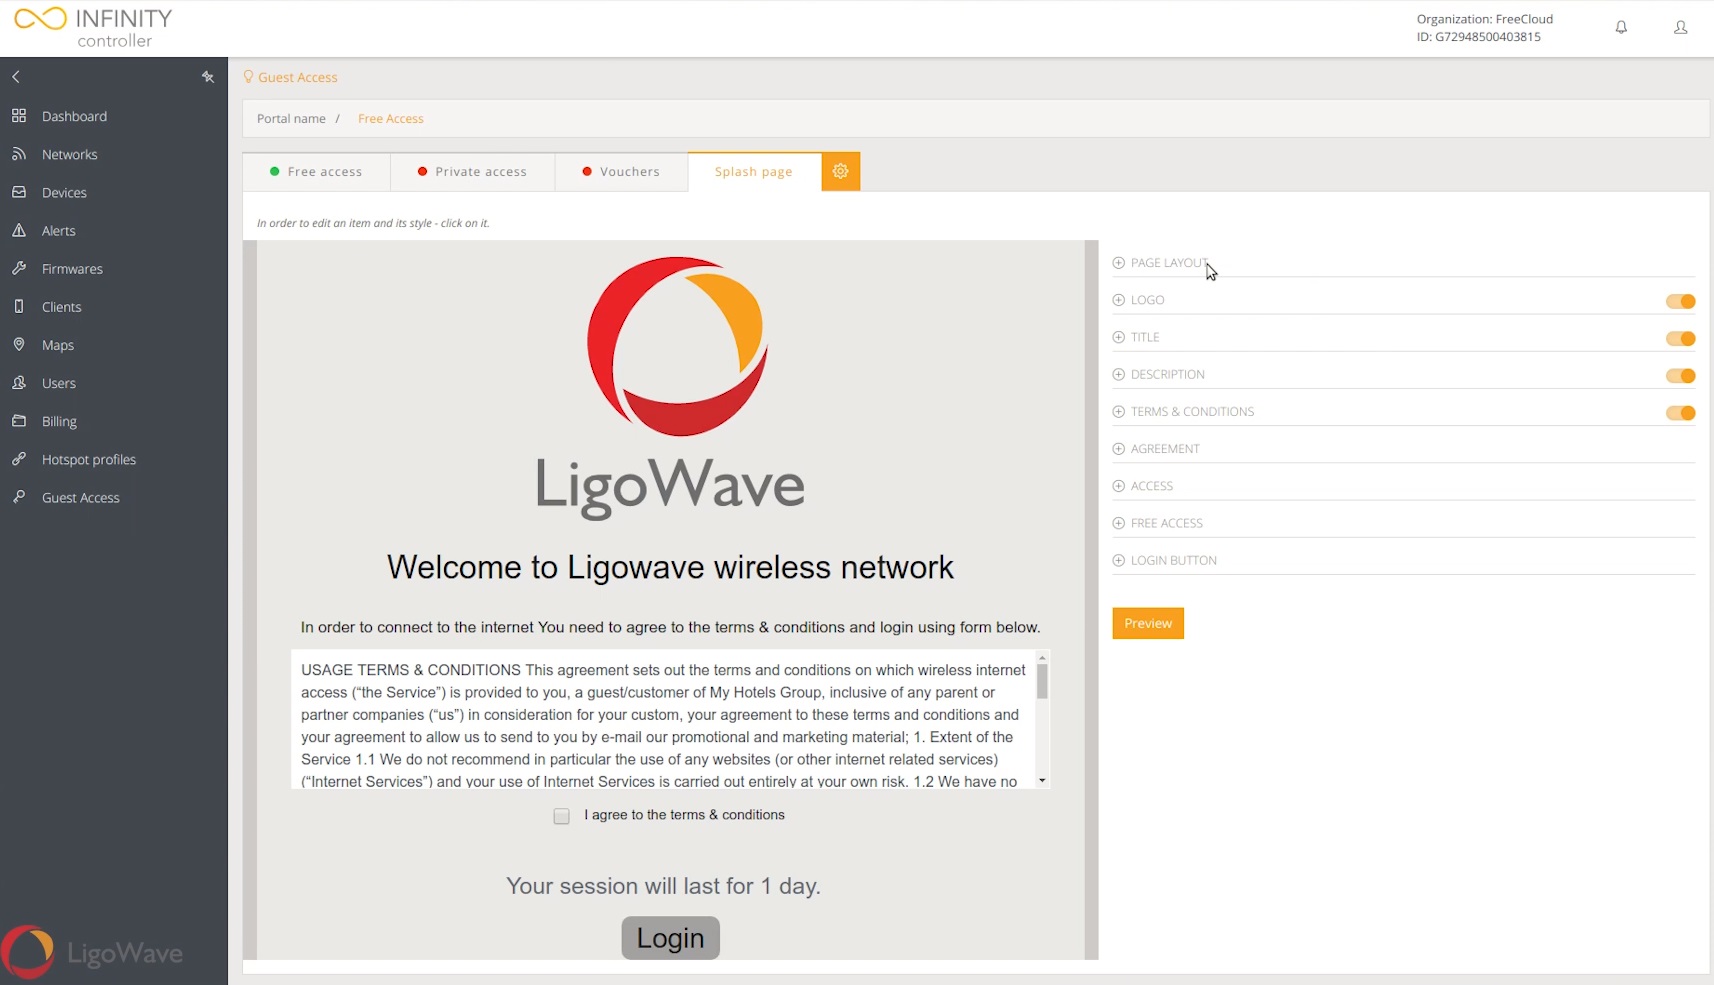 Cloud Controller - LigoWave knowledge base